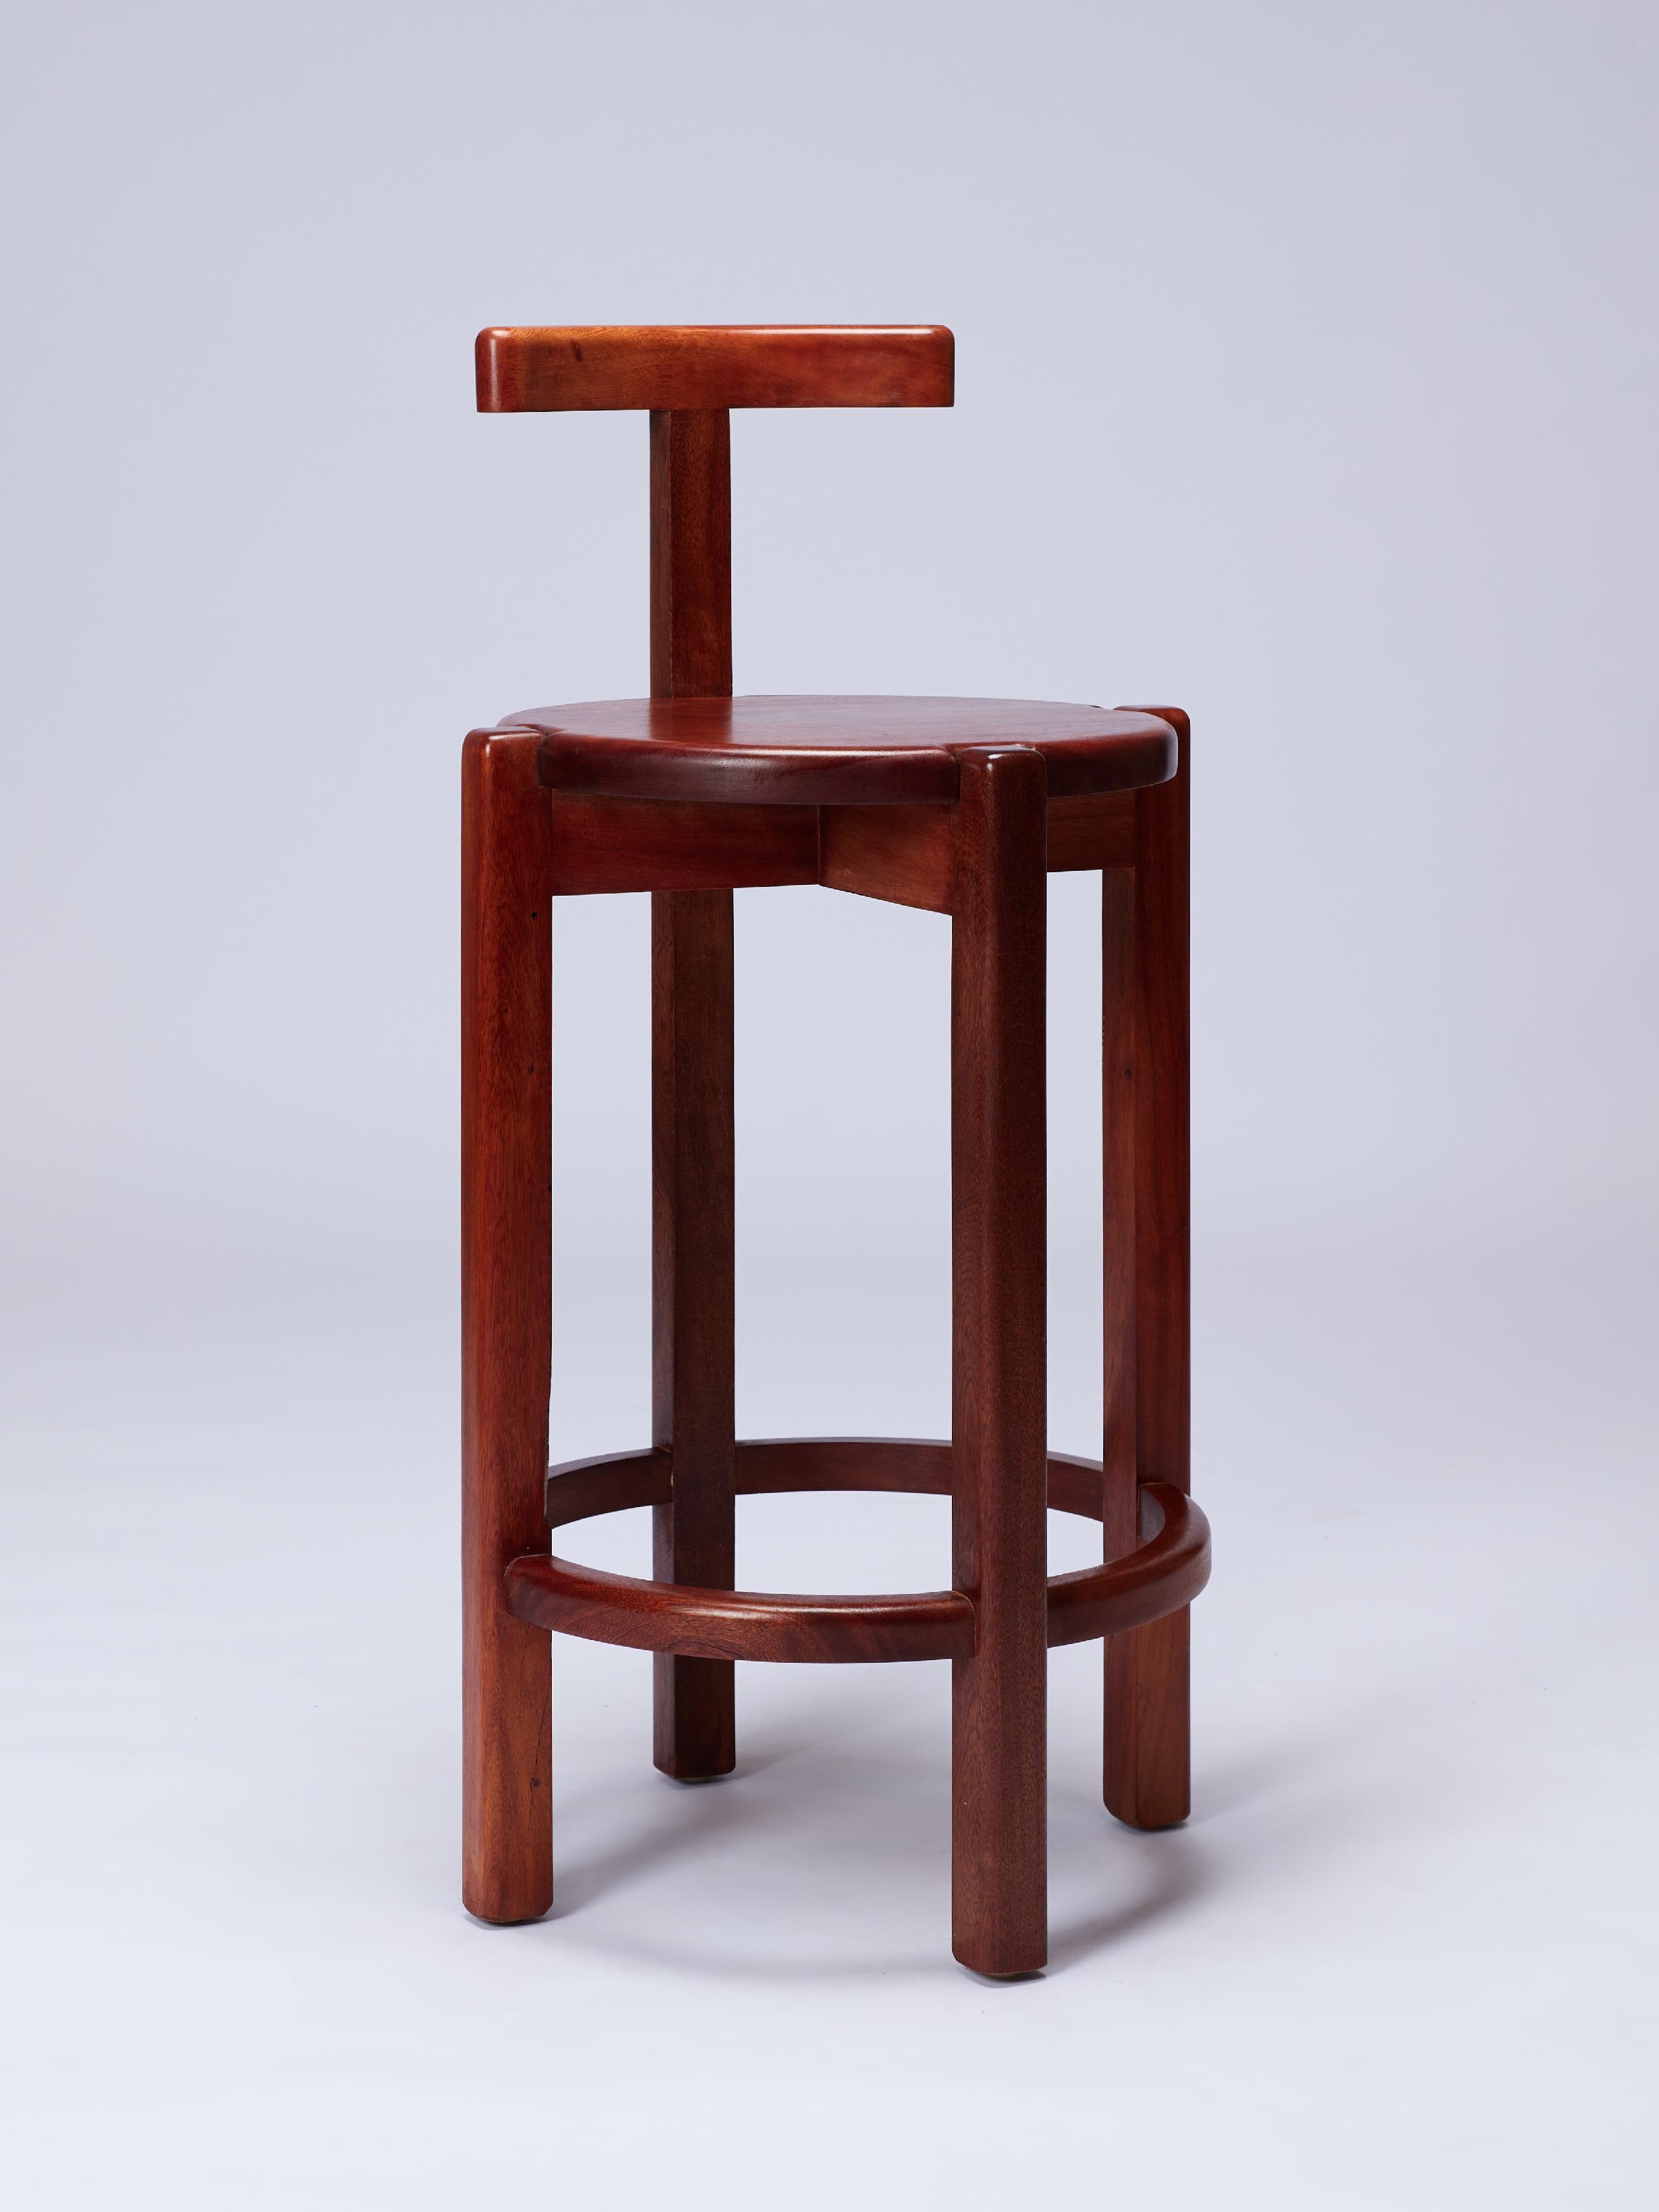 Der Barhocker Orno ist Teil der Orno Collection, unserer ersten Kollektion, die vollständig aus Hartholz besteht. Alle Stücke wurden nach demselben Konstruktionssystem entworfen, das aus grundlegenden Strukturelementen - Säulen, Balken, Stützebenen